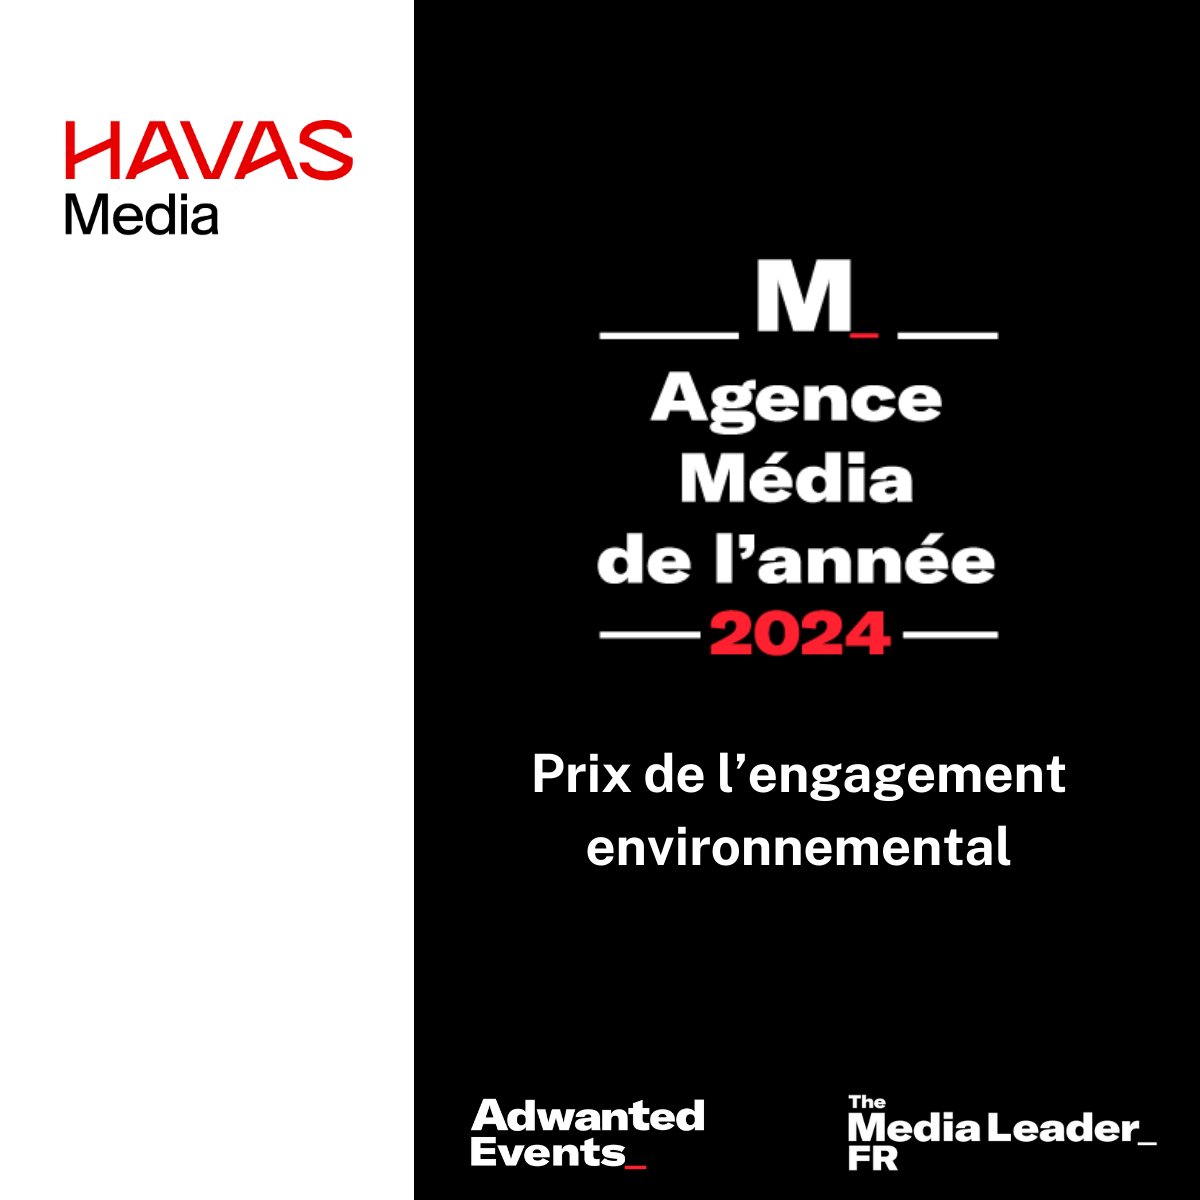 #Félicitations à Havas Media France qui a remporté le #𝙋𝙧𝙞𝙭 𝙙𝙚 𝙡’#𝙚𝙣𝙜𝙖𝙜𝙚𝙢𝙚𝙣𝙩 #𝙚𝙣𝙫𝙞𝙧𝙤𝙣𝙣𝙚𝙢𝙚𝙣𝙩𝙖𝙡 à l’occasion de la cérémonie de l’Agence Media de l’Année 2024 par @TheMediaLeader🏆 Bravo aux équipes et merci à @Orange pour sa confiance 🔥